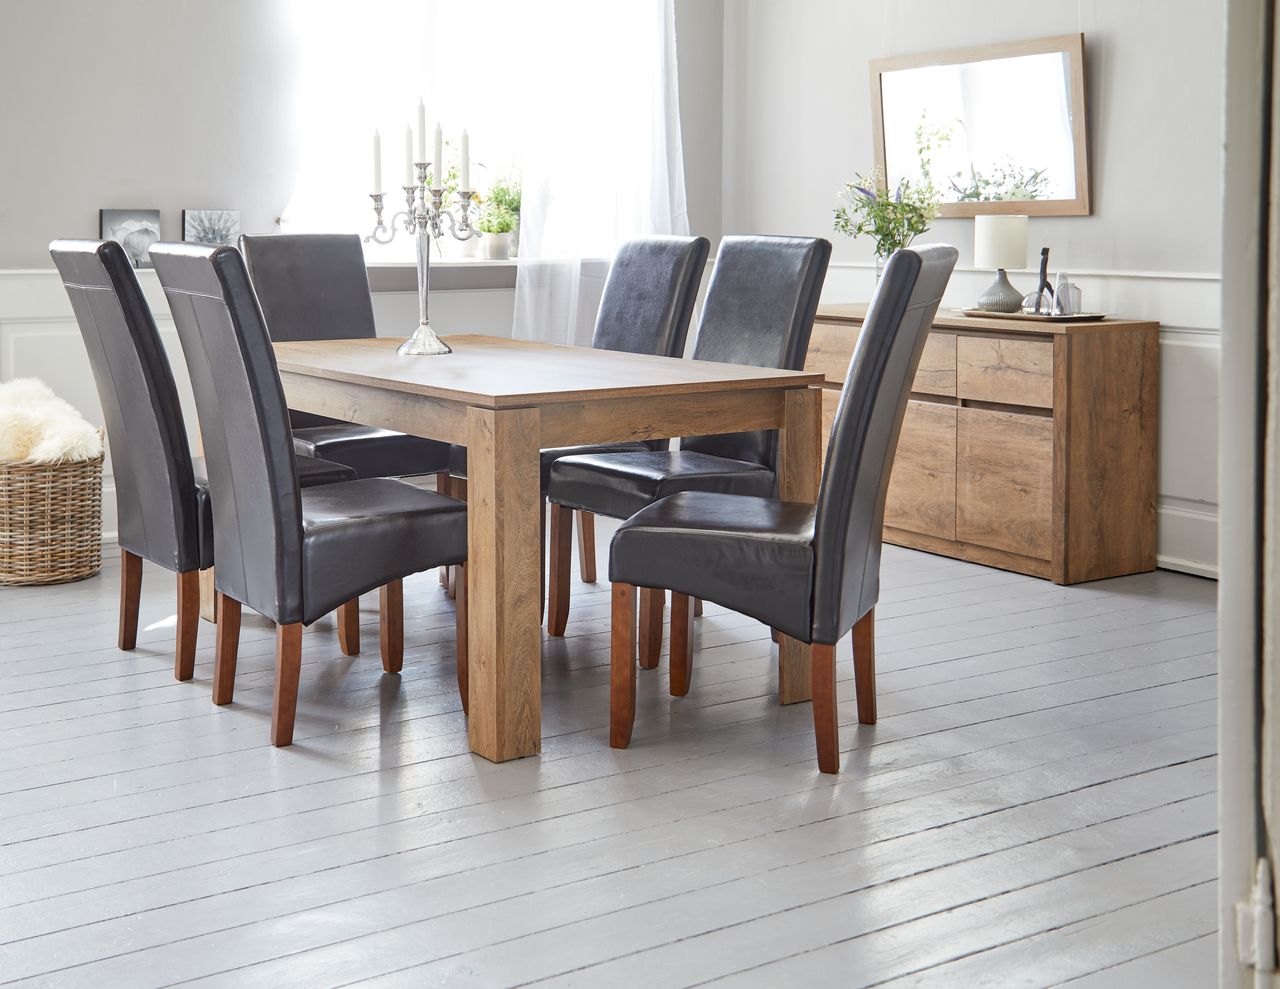 Phòng bếp Scandinavian Style với thiết kế nội thất đơn giản, gọn gàng giúp không gian thêm rộng rãi